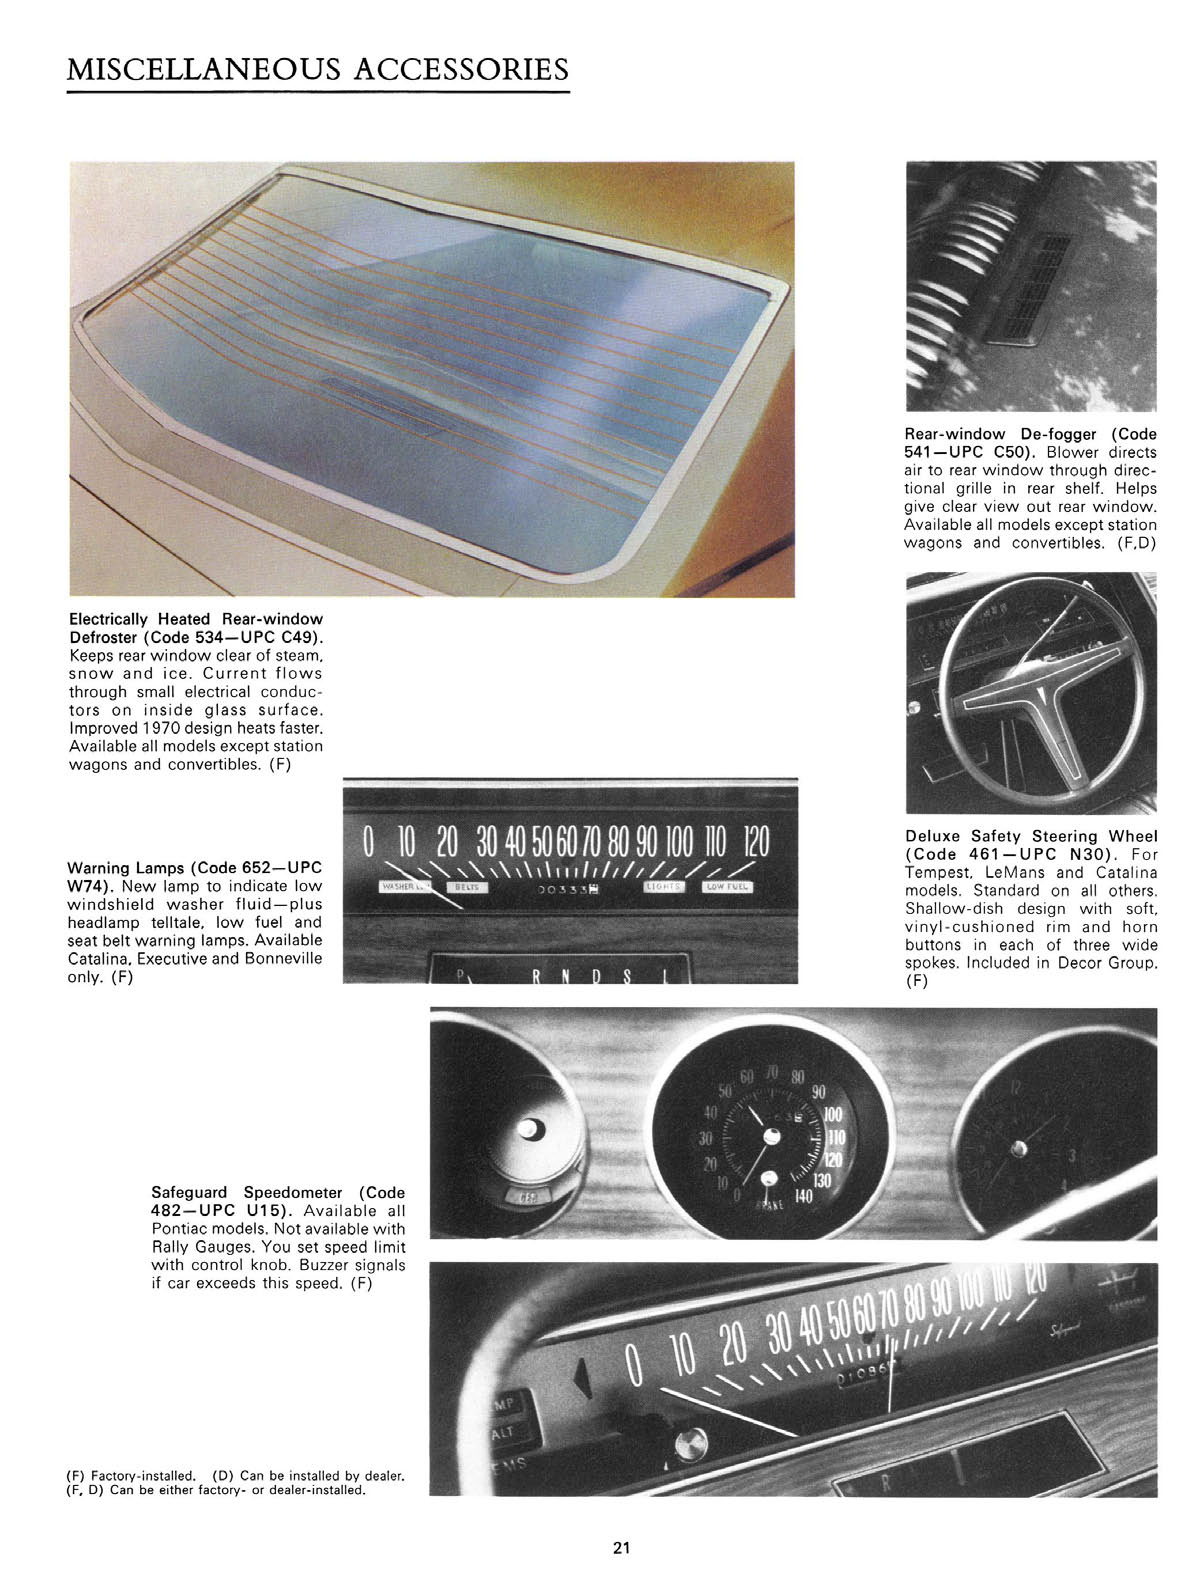 n_1970 Pontiac Accessories-21.jpg